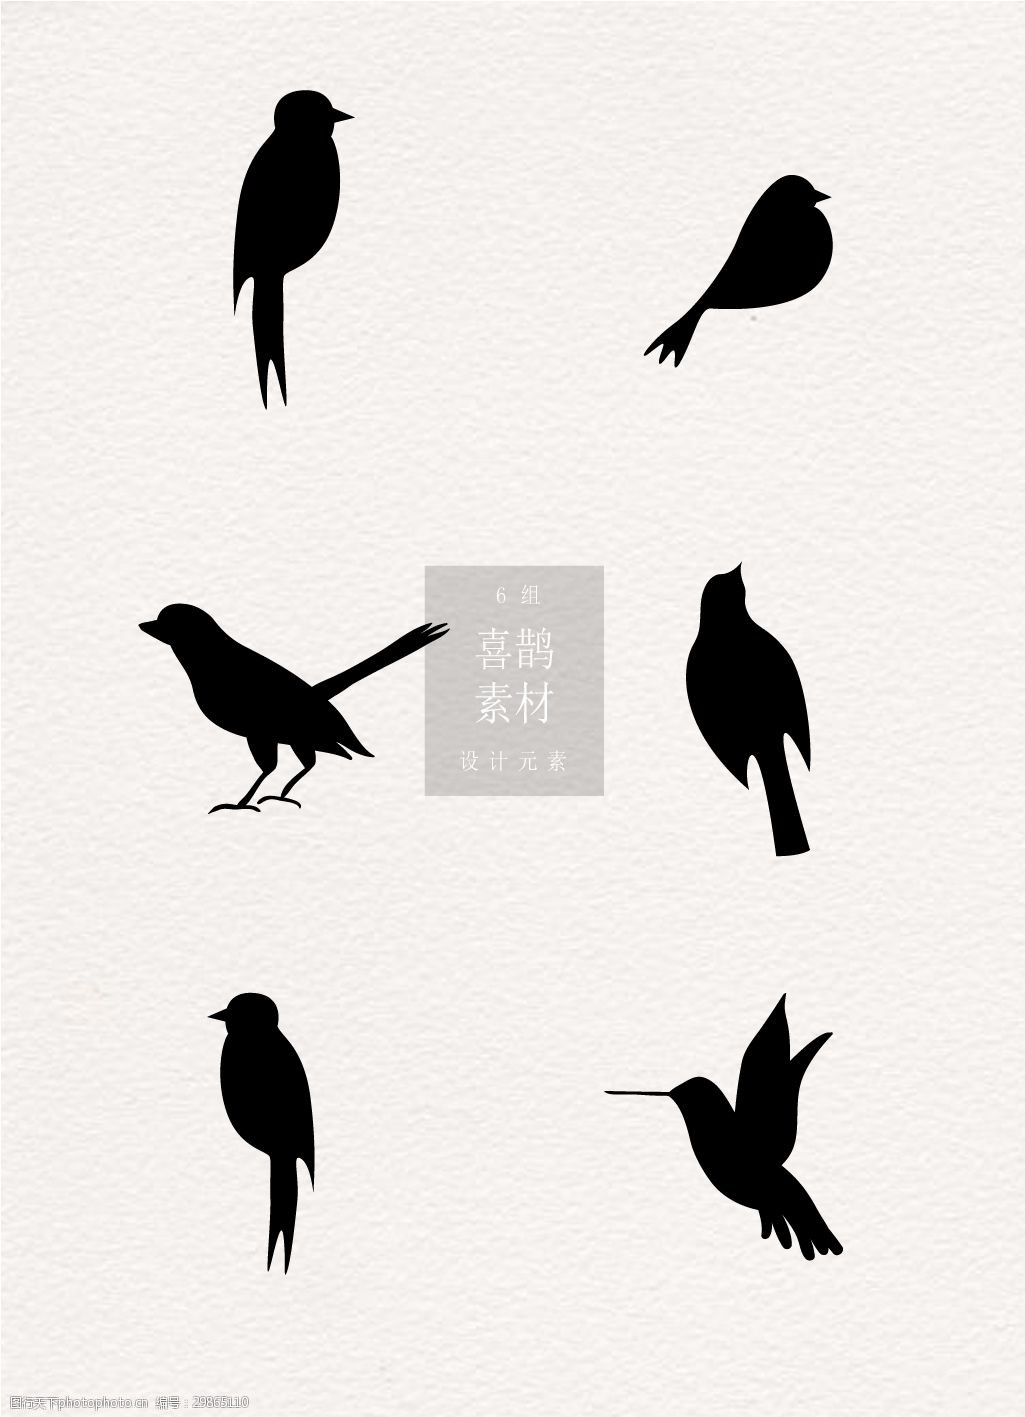 关键词:喜鹊鸟类黑白ai矢量素材 设计 素材 七夕 情人节 可爱 喜鹊